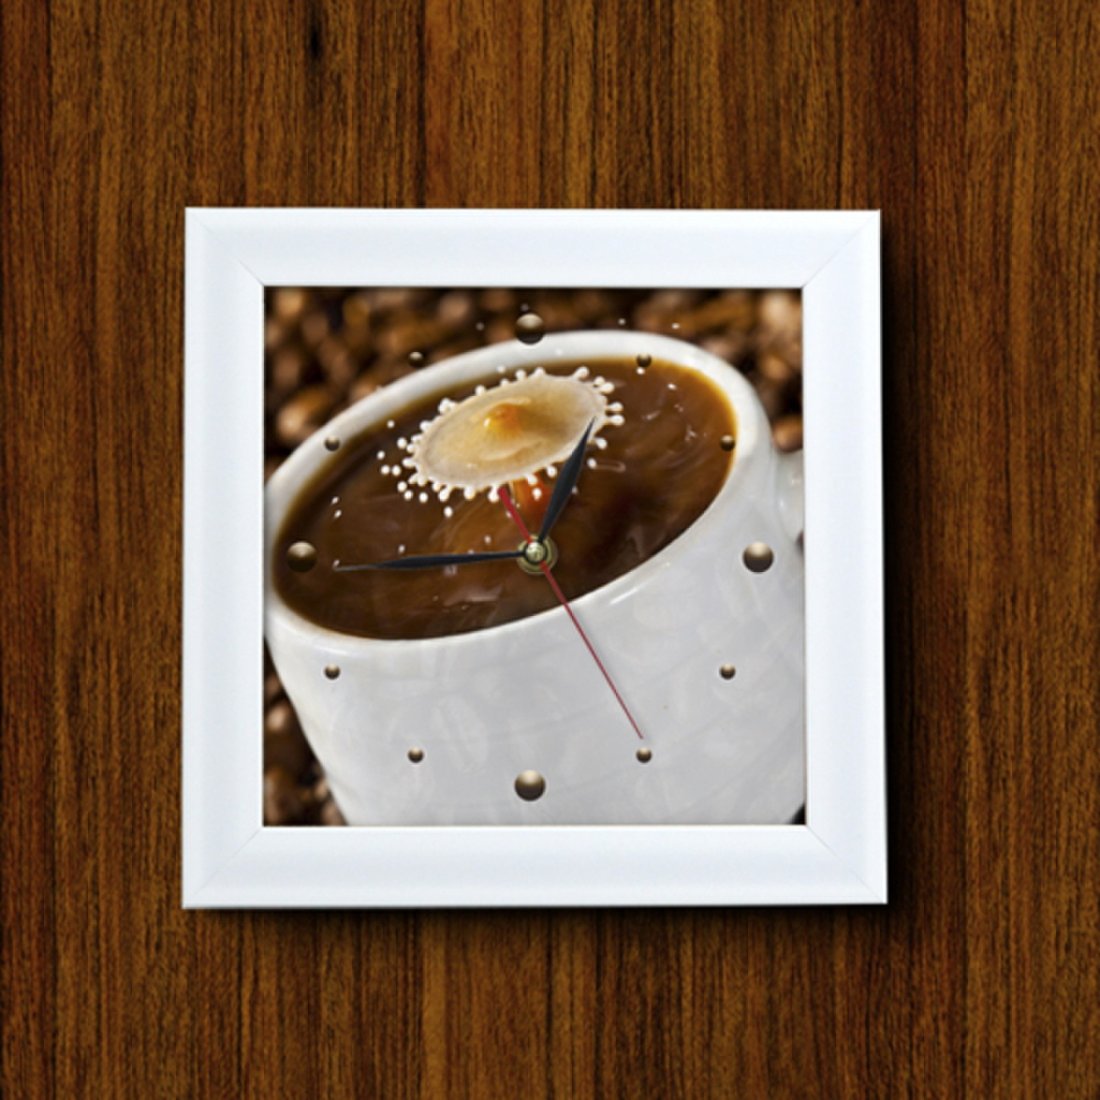 cx298-커피한잔설탕퐁당미니액자벽시계_디자인액자시계 상품이미지 1